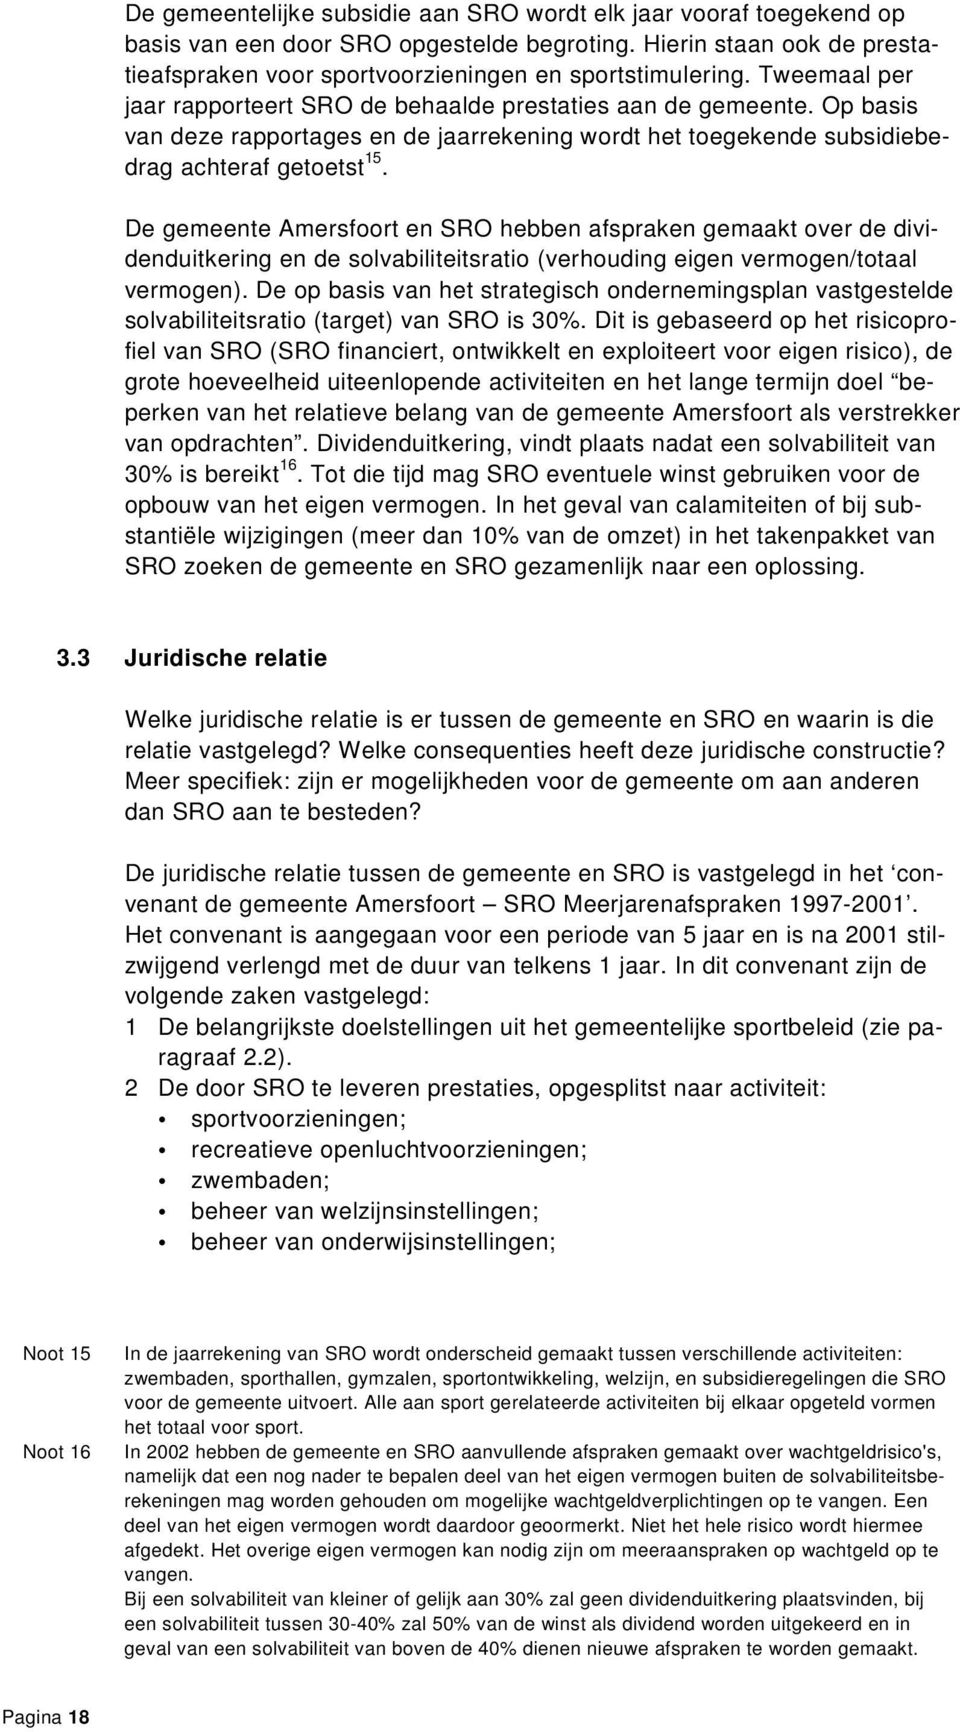 De gemeente Amersfoort en SRO hebben afspraken gemaakt over de dividenduitkering en de solvabiliteitsratio (verhouding eigen vermogen/totaal vermogen).